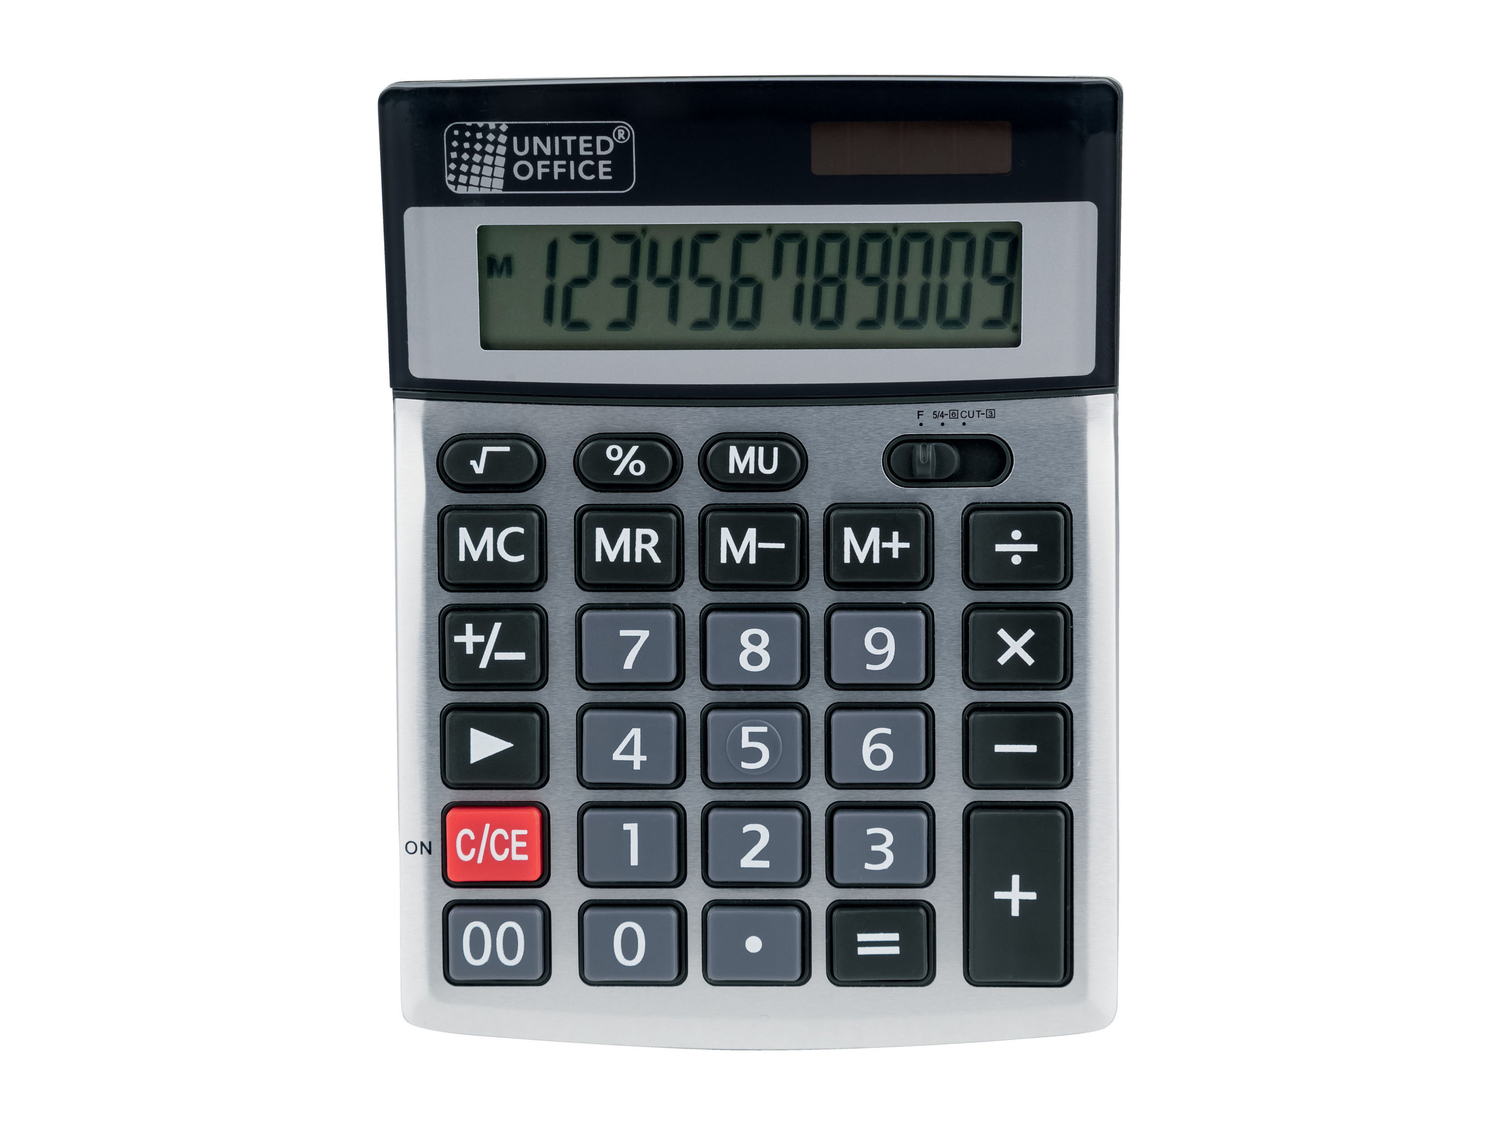 Calcolatrice da tavolo United Office, prezzo 3.99 &#8364; 
- Display a 12 cifre
- ...